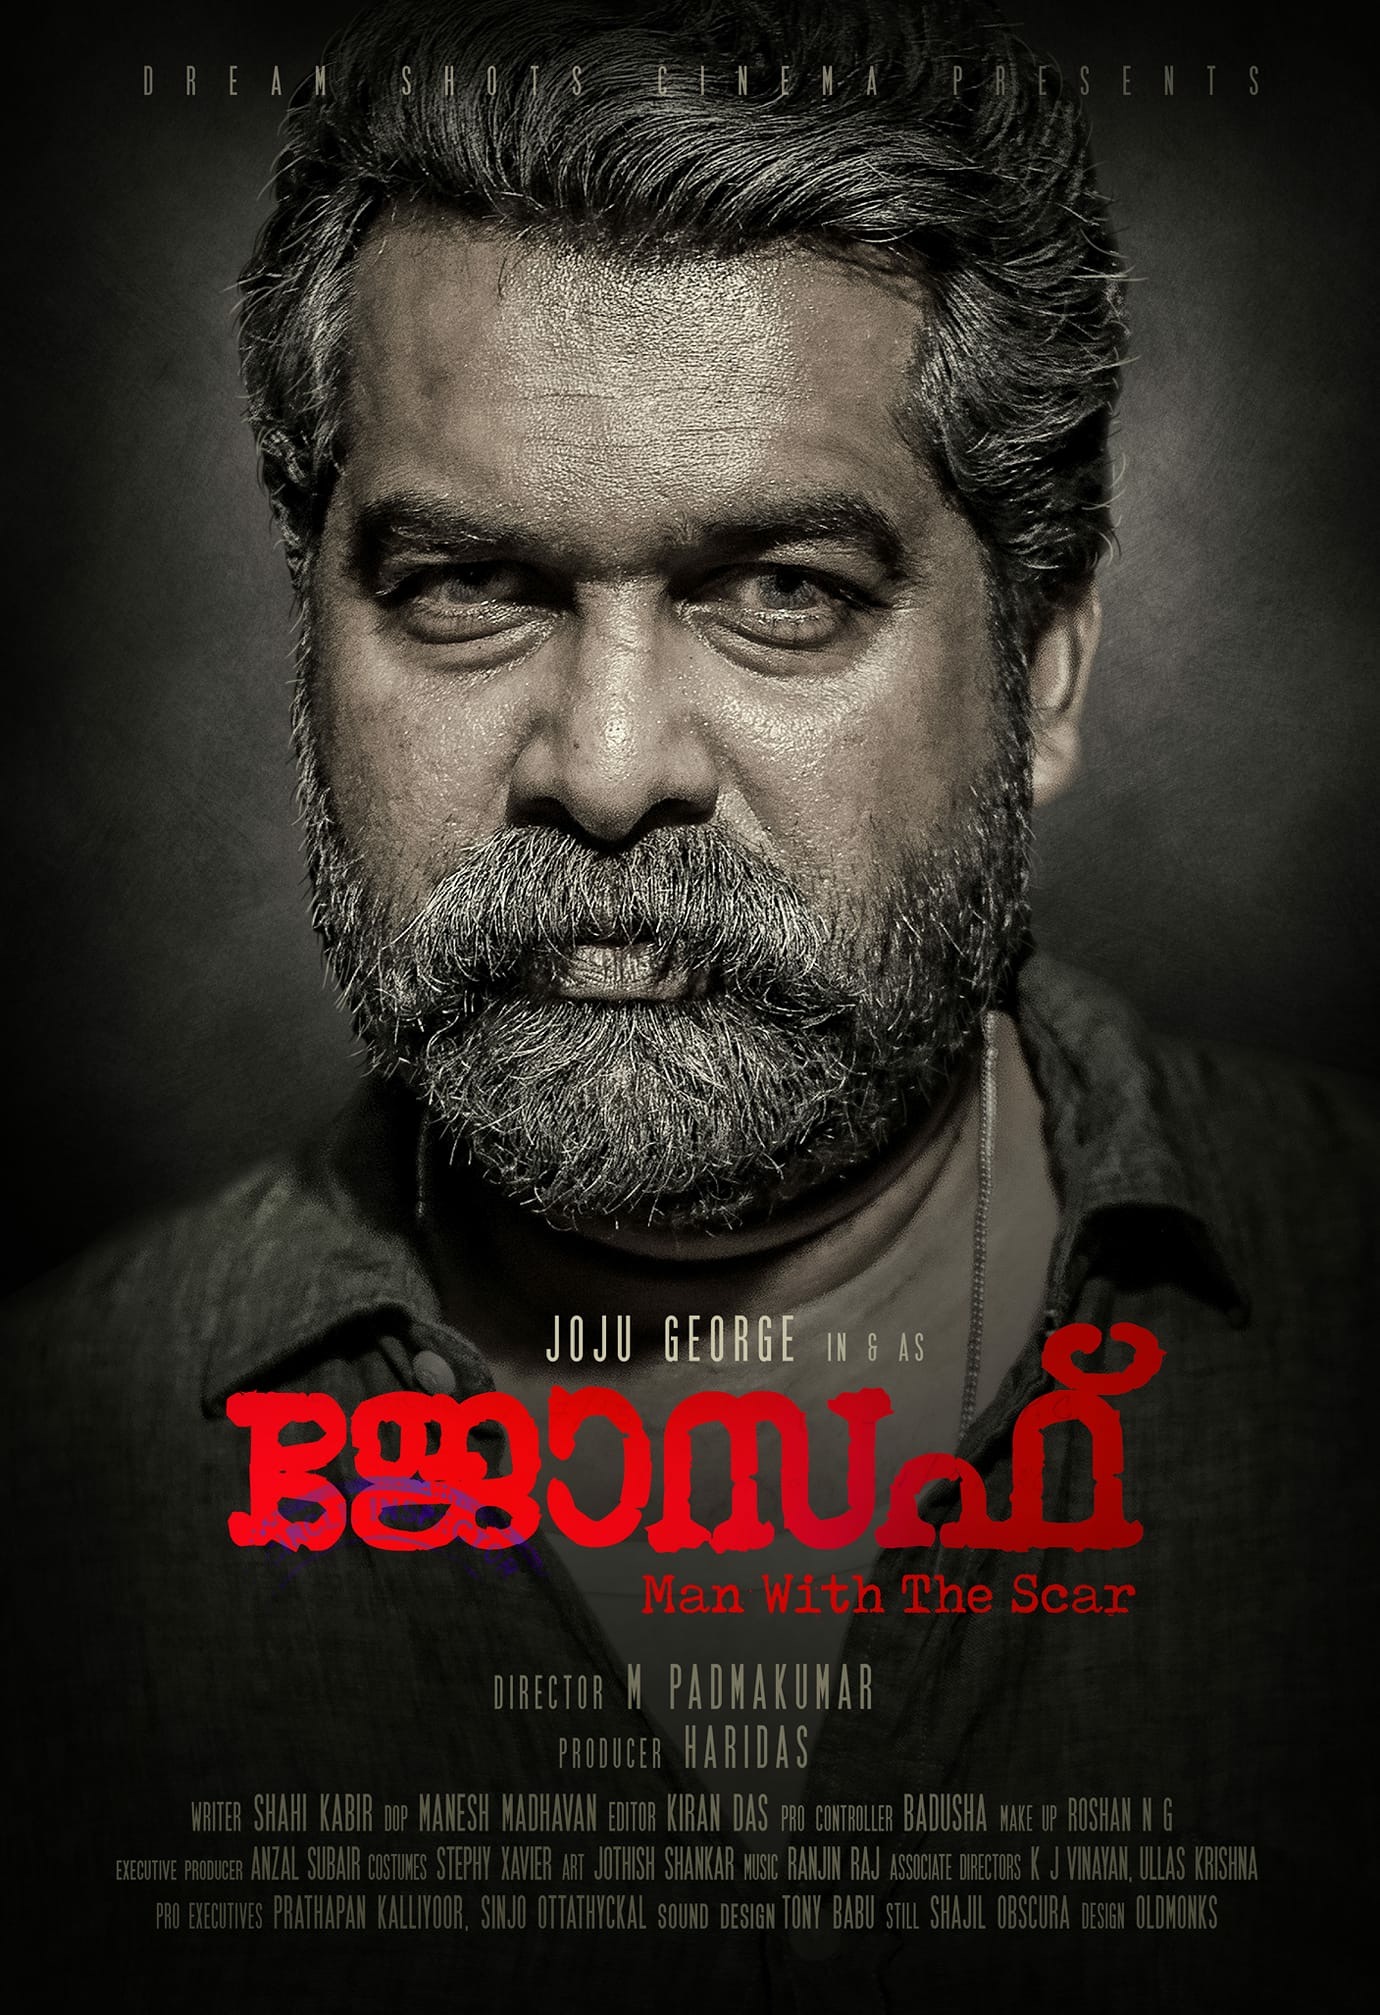 Joseph Malayalam Full Movie , HD Wallpaper & Backgrounds